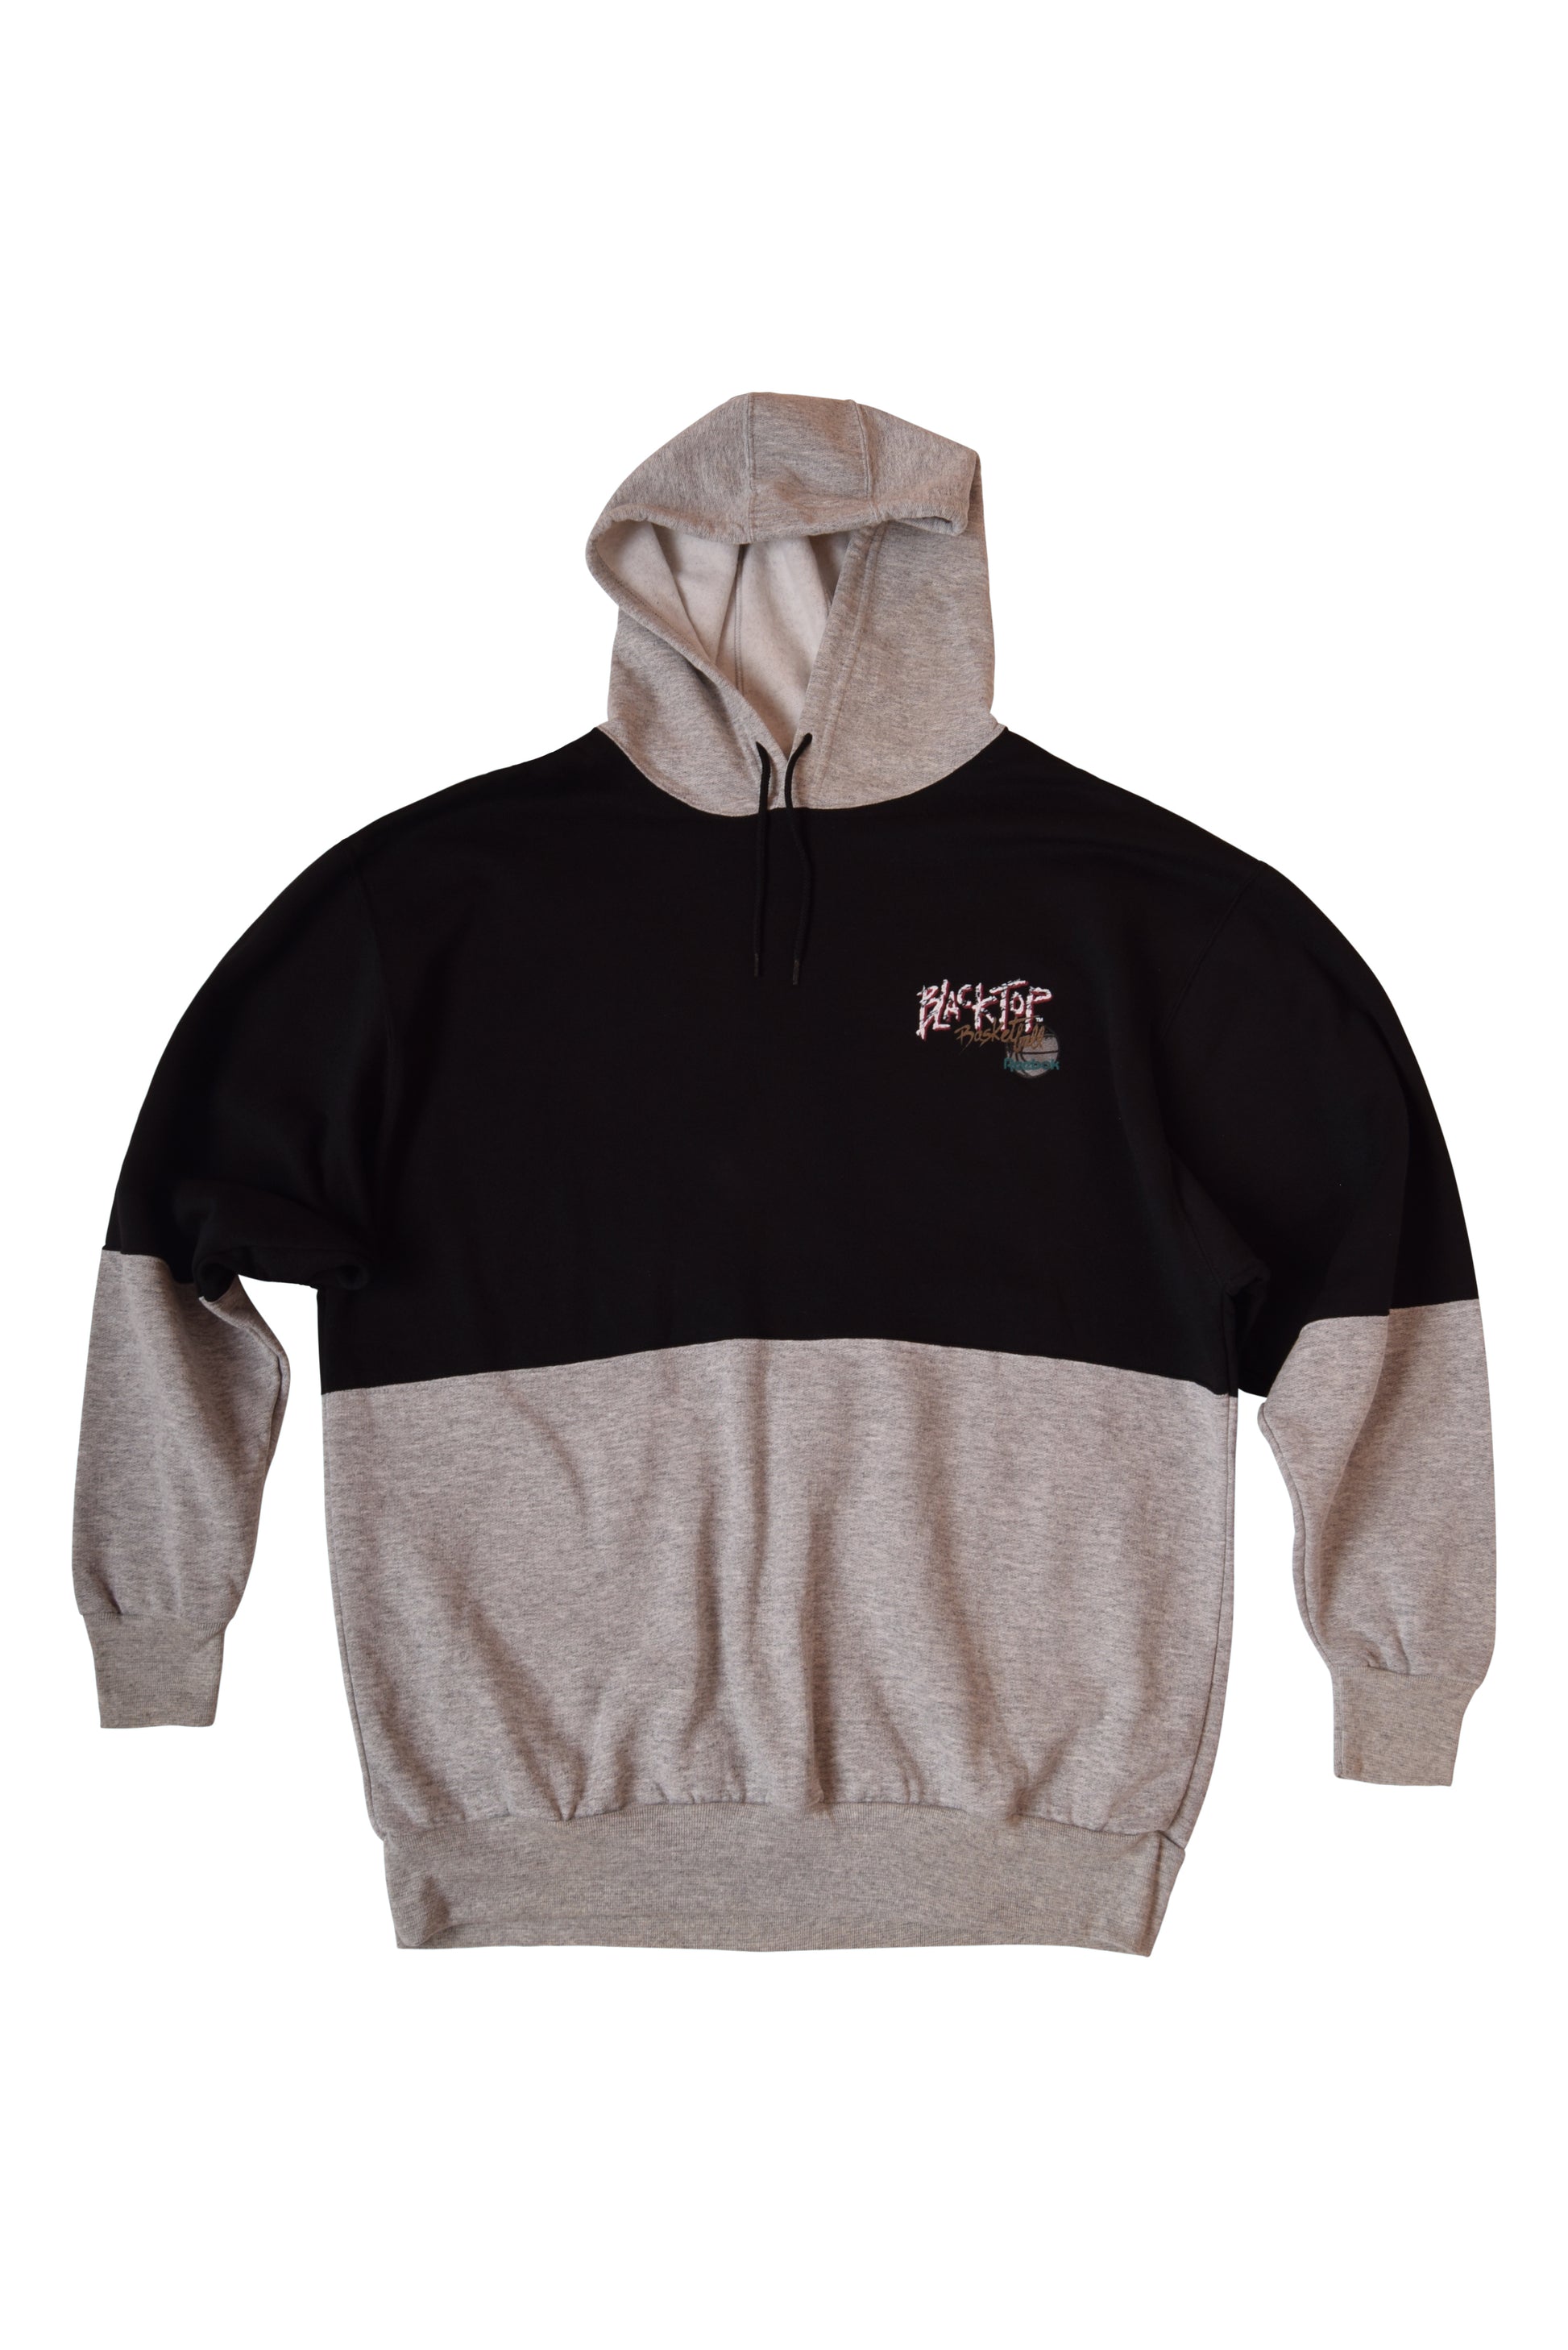 Vintage Reebok BlackTop Basketball Hoodie Sweatshirt Size XL Black Grey